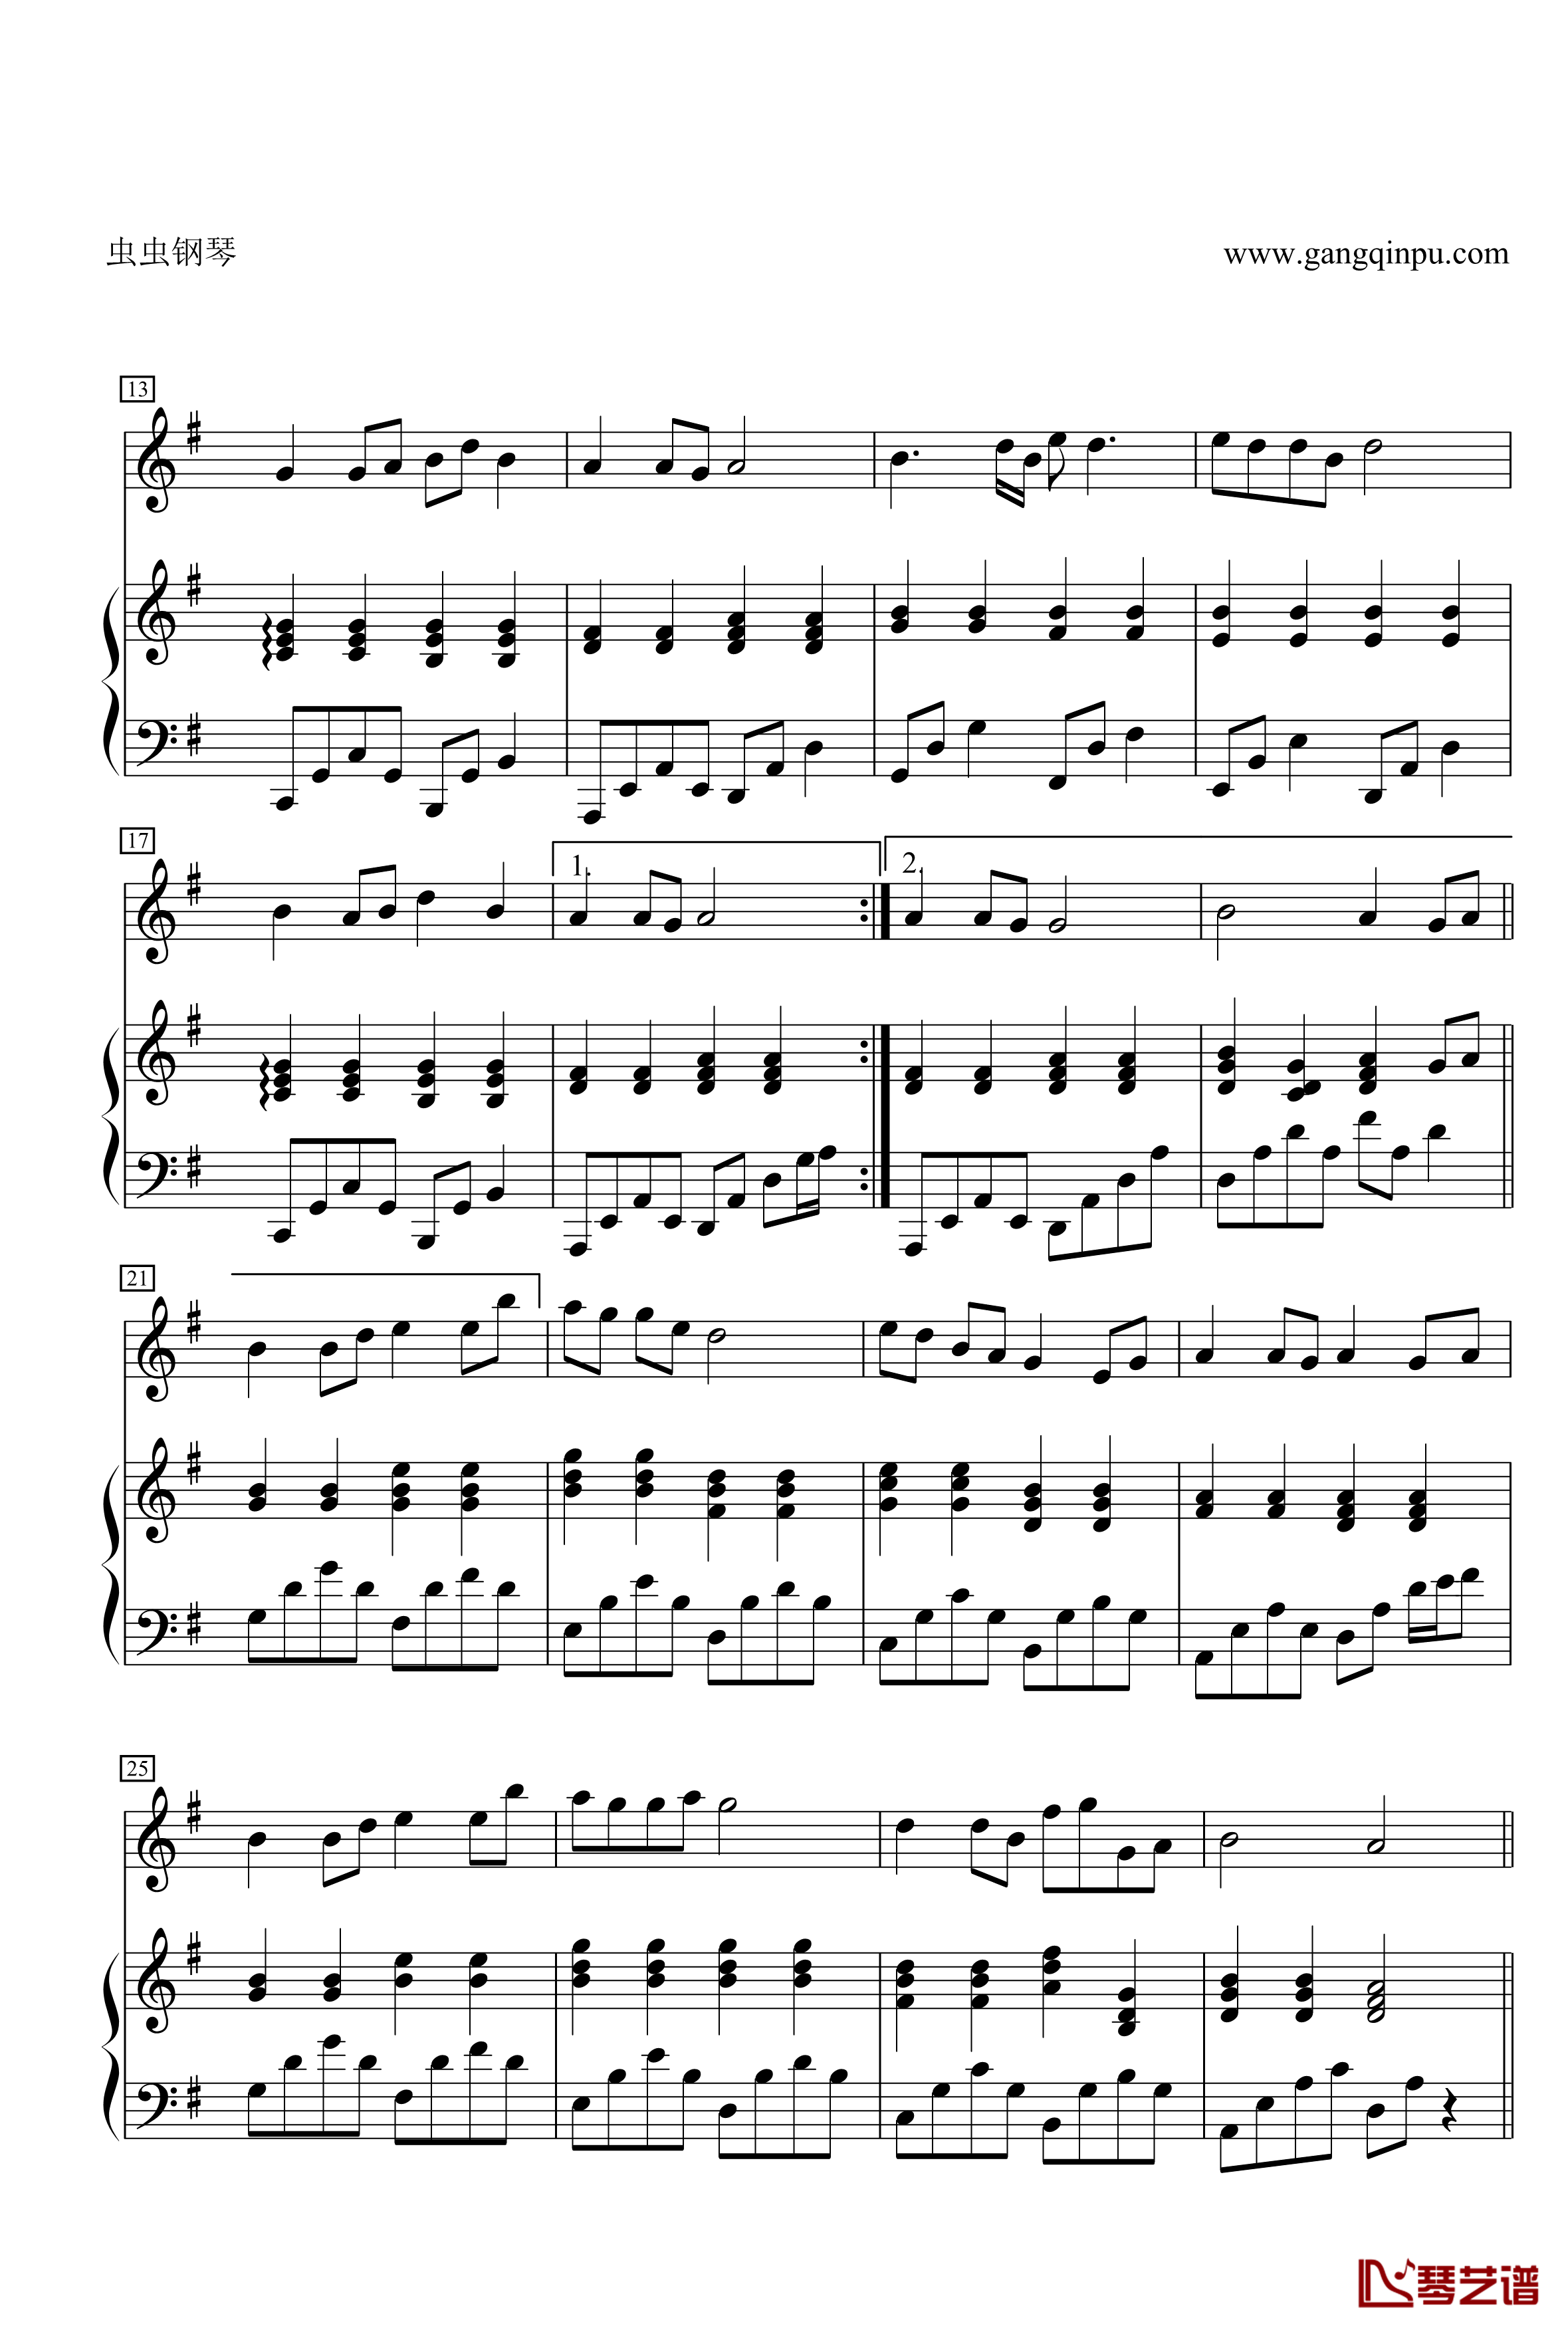 菊花台钢琴谱-二胡对话大提琴 钢琴 总谱-周杰伦